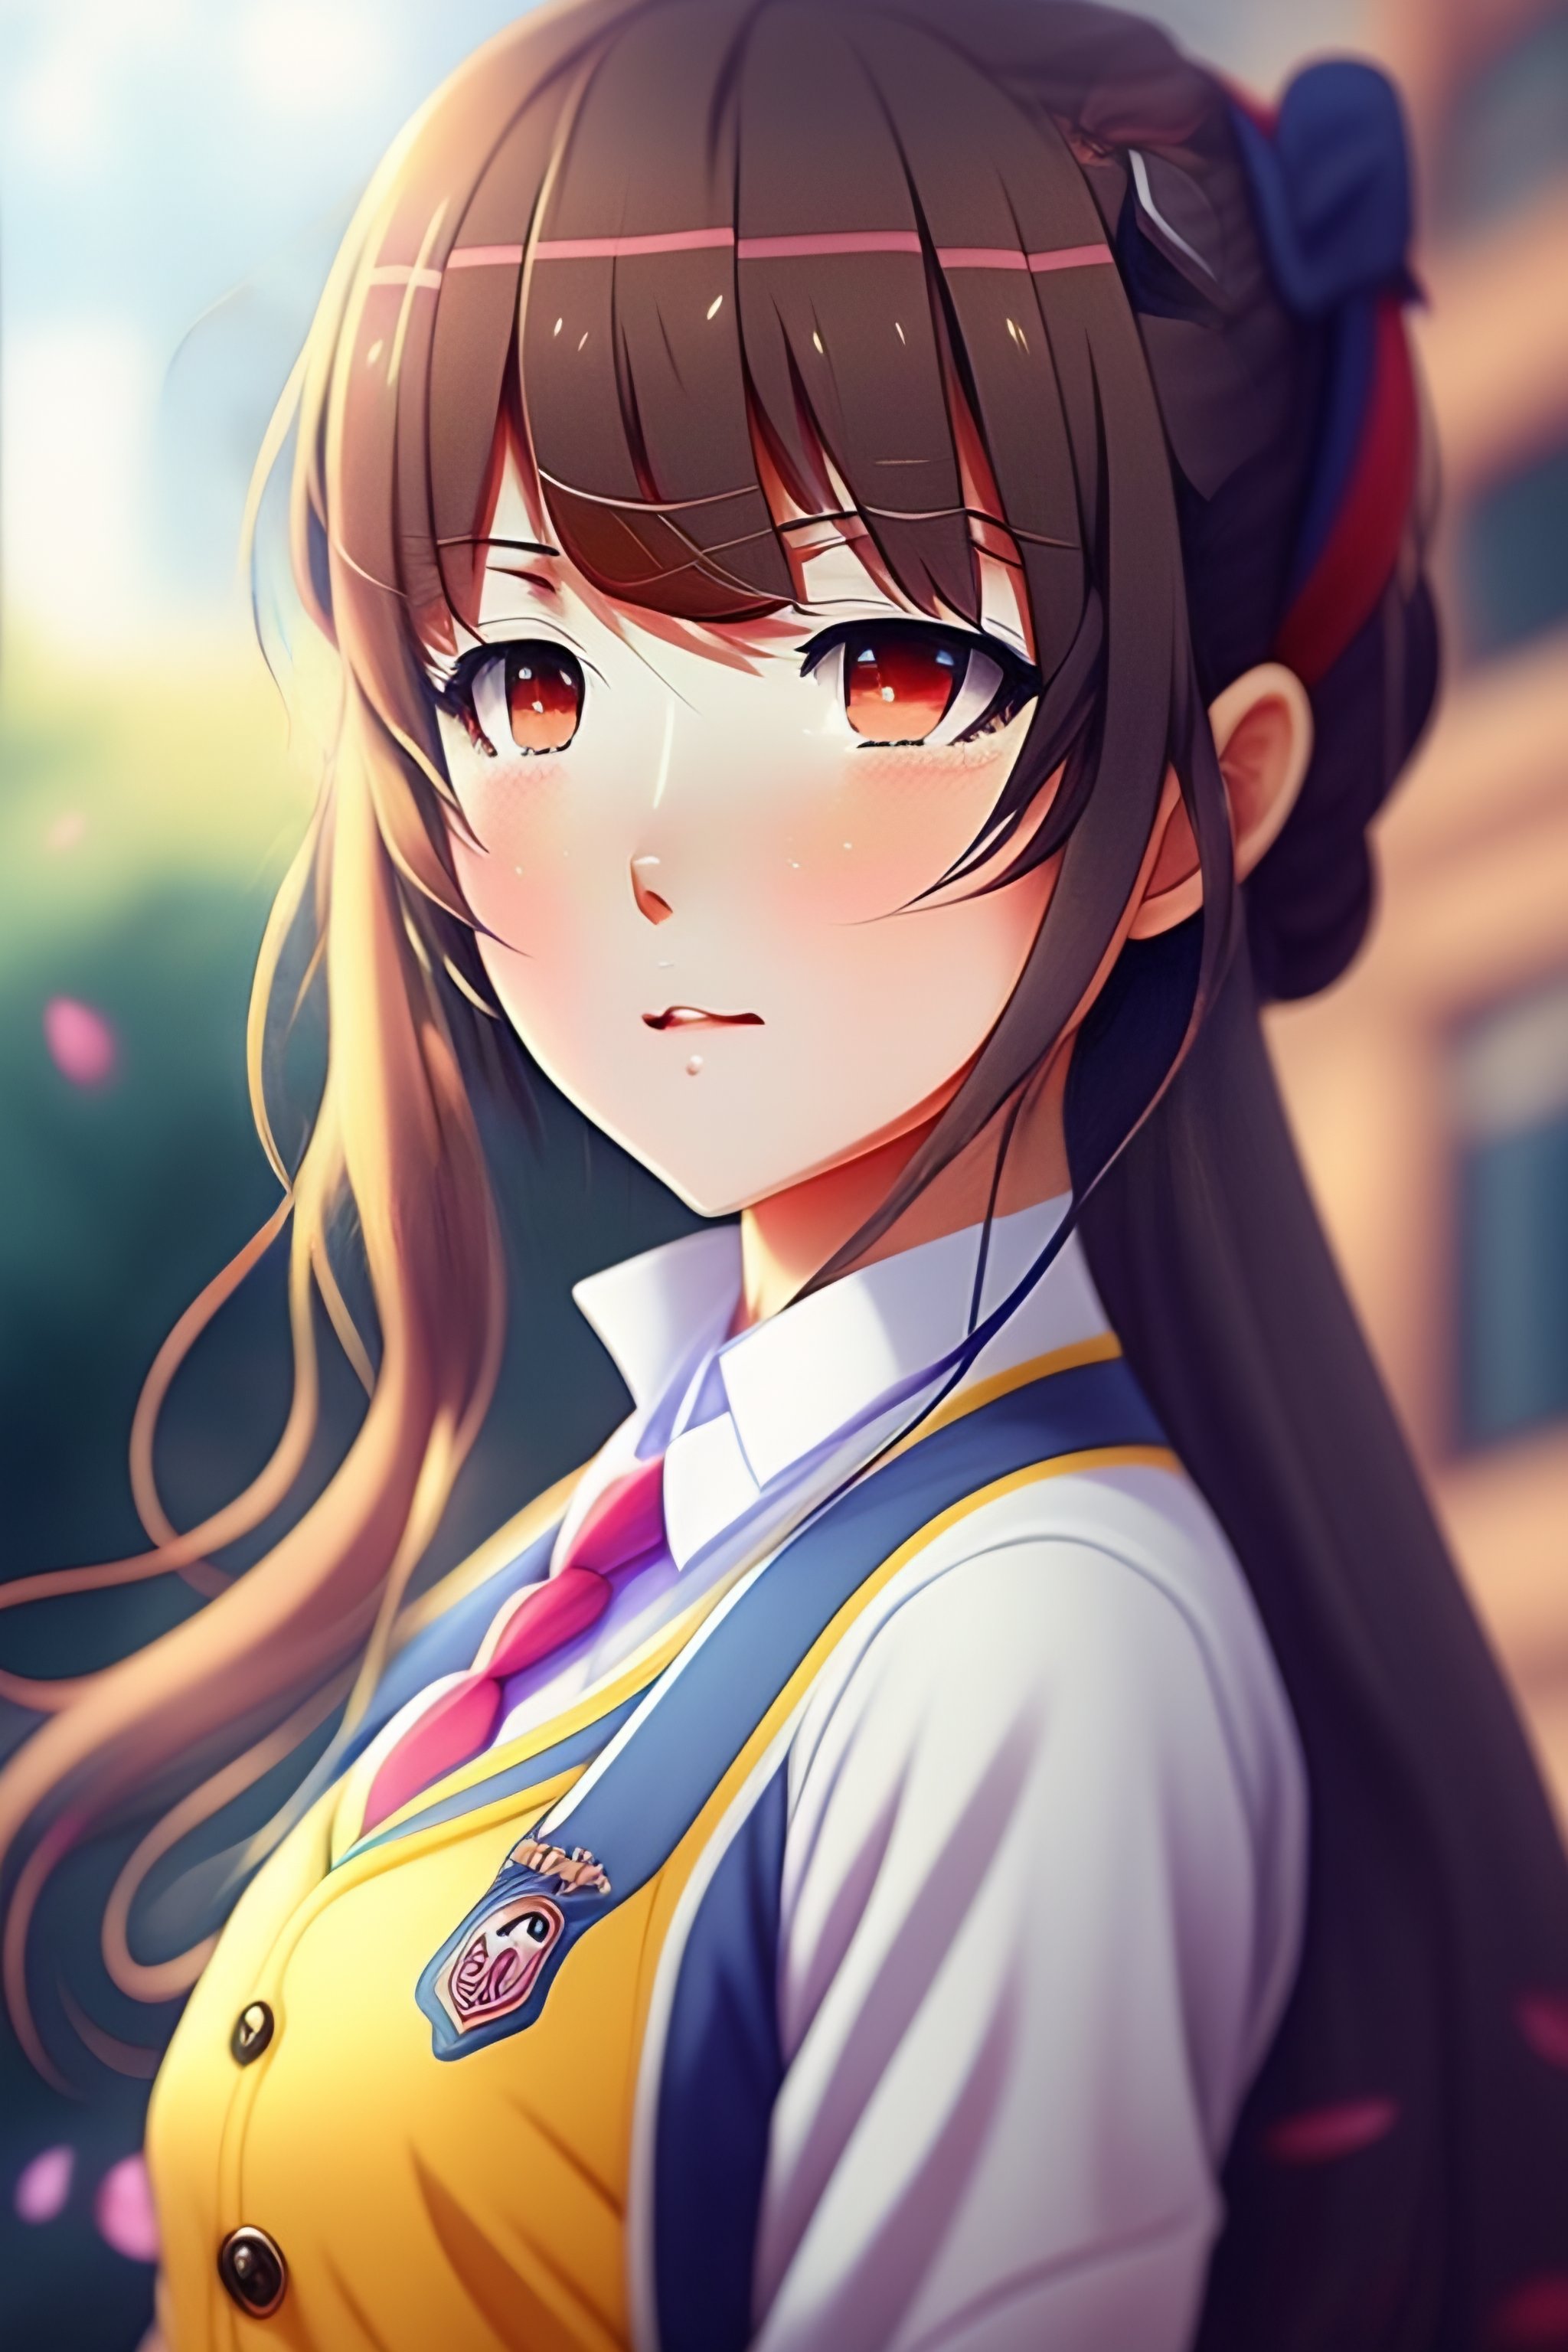 Anime Girl Student